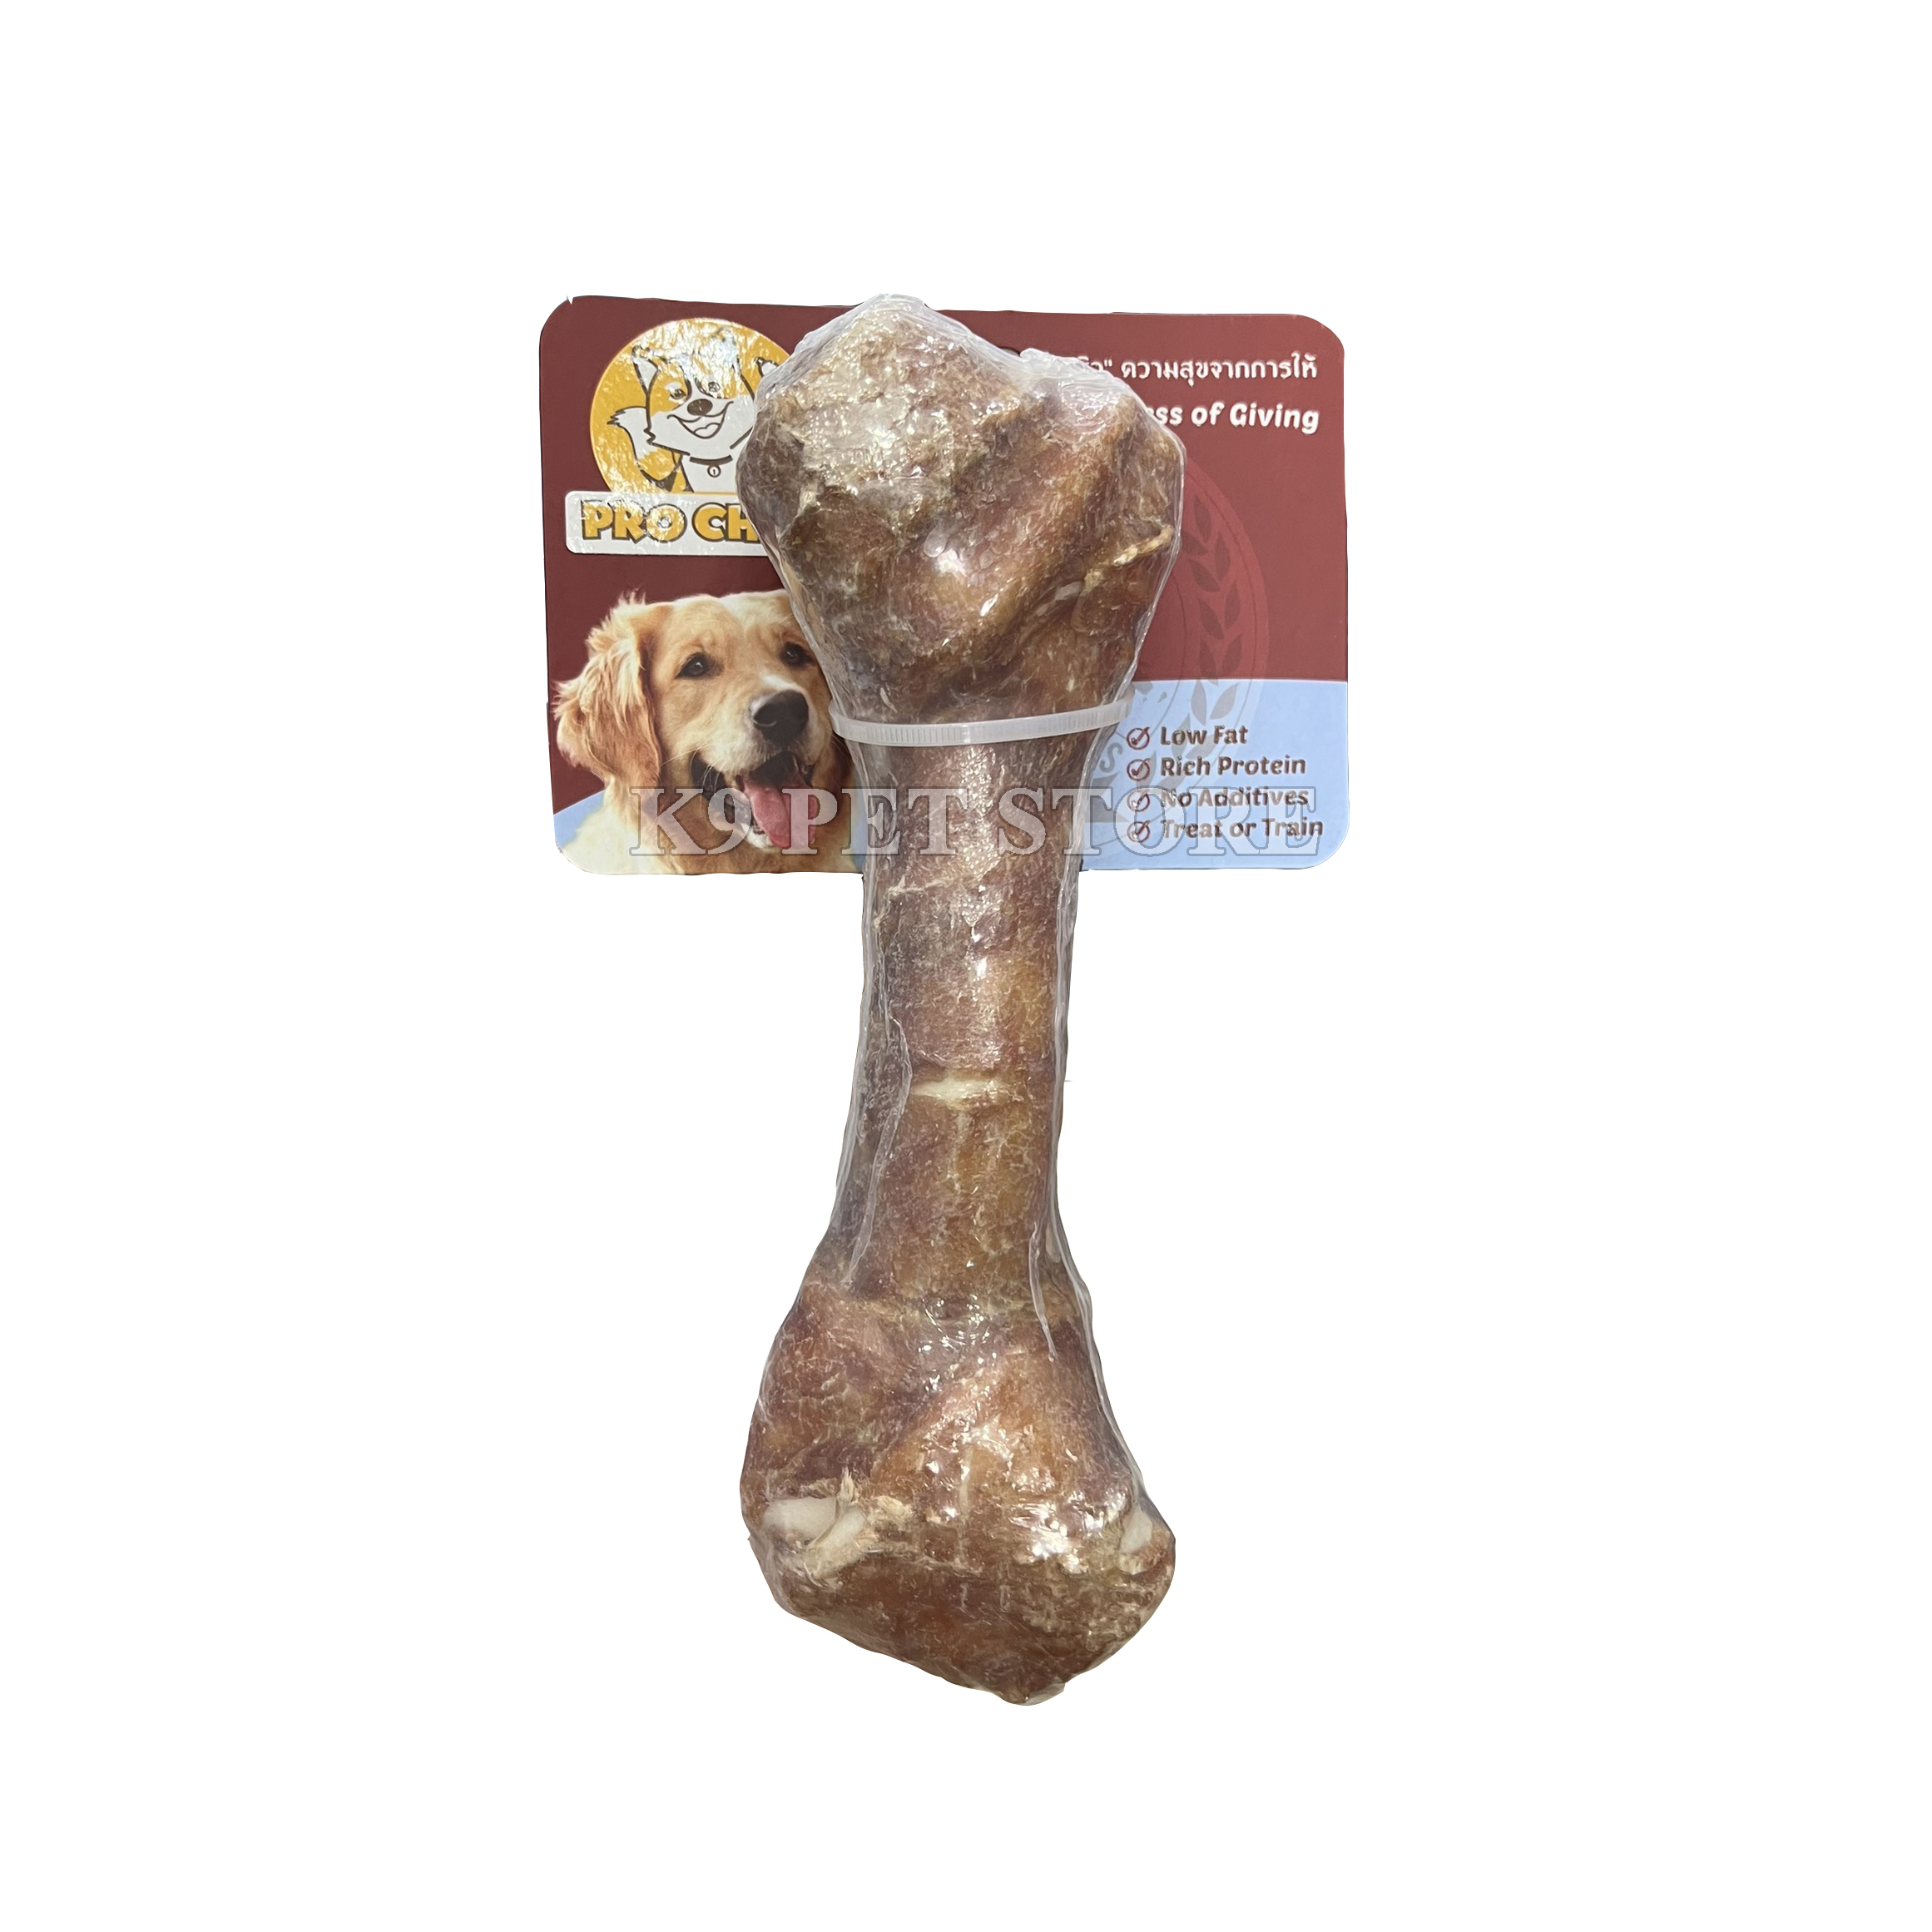 Xương gặm cho chó Pro Chew Munchy Bone 8" with Pork